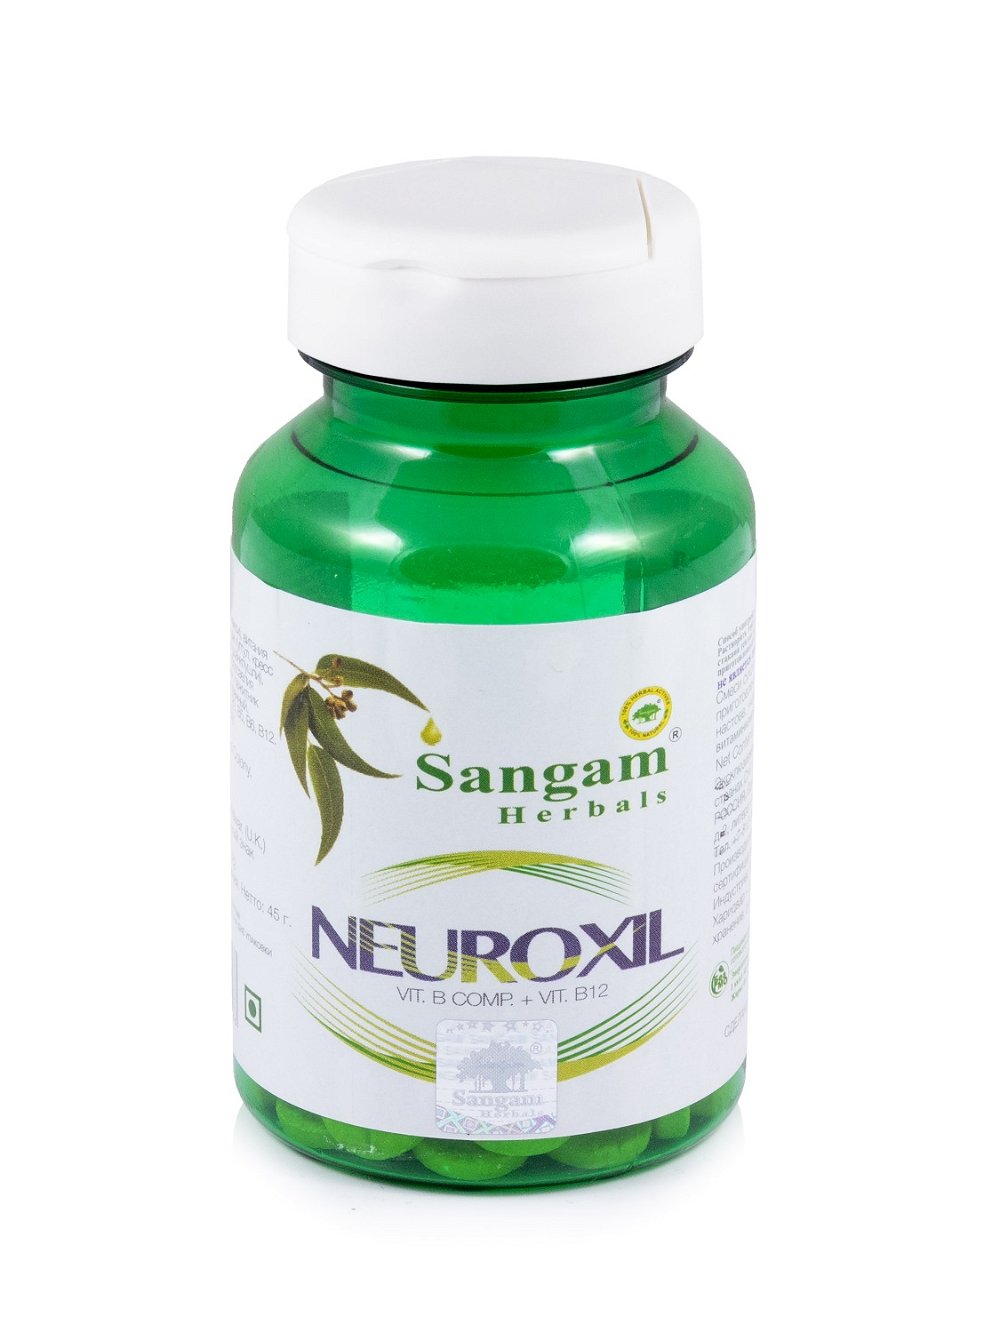 Неироксил Sangam Herbals (60 таблеток), Неироксил